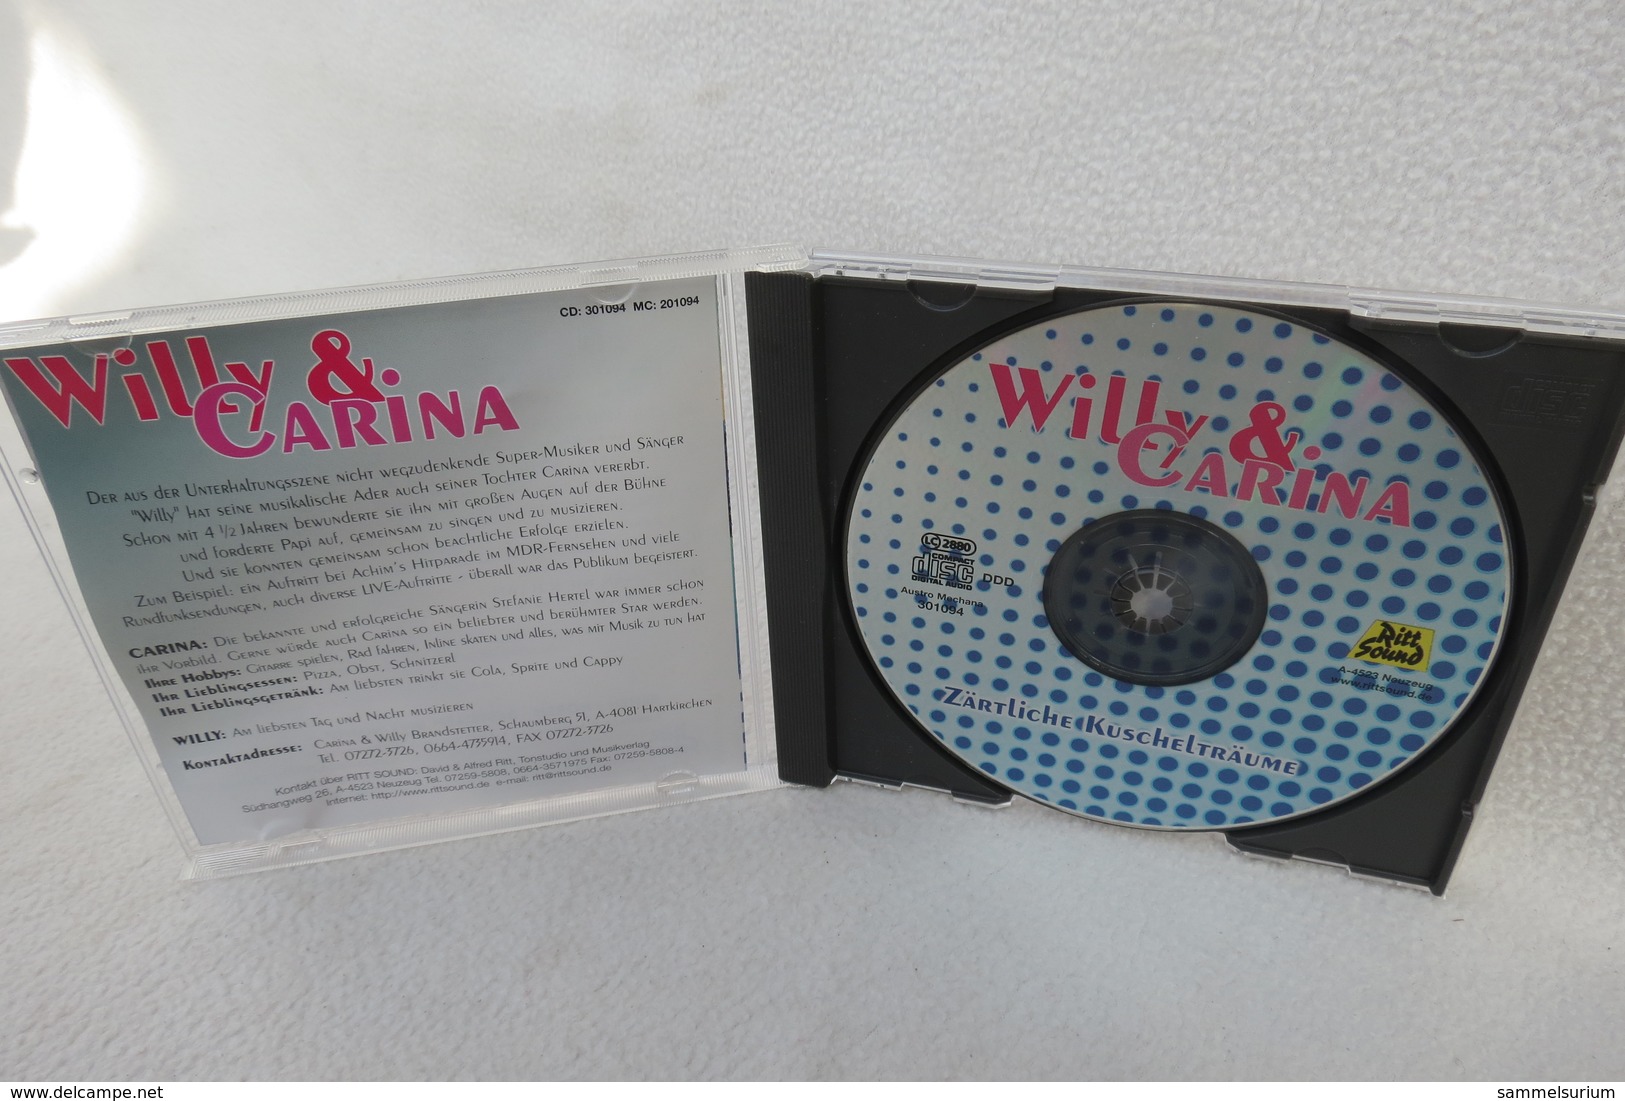 CD "Willy & Carina" Zärtliche Kuschelträume - Other - German Music